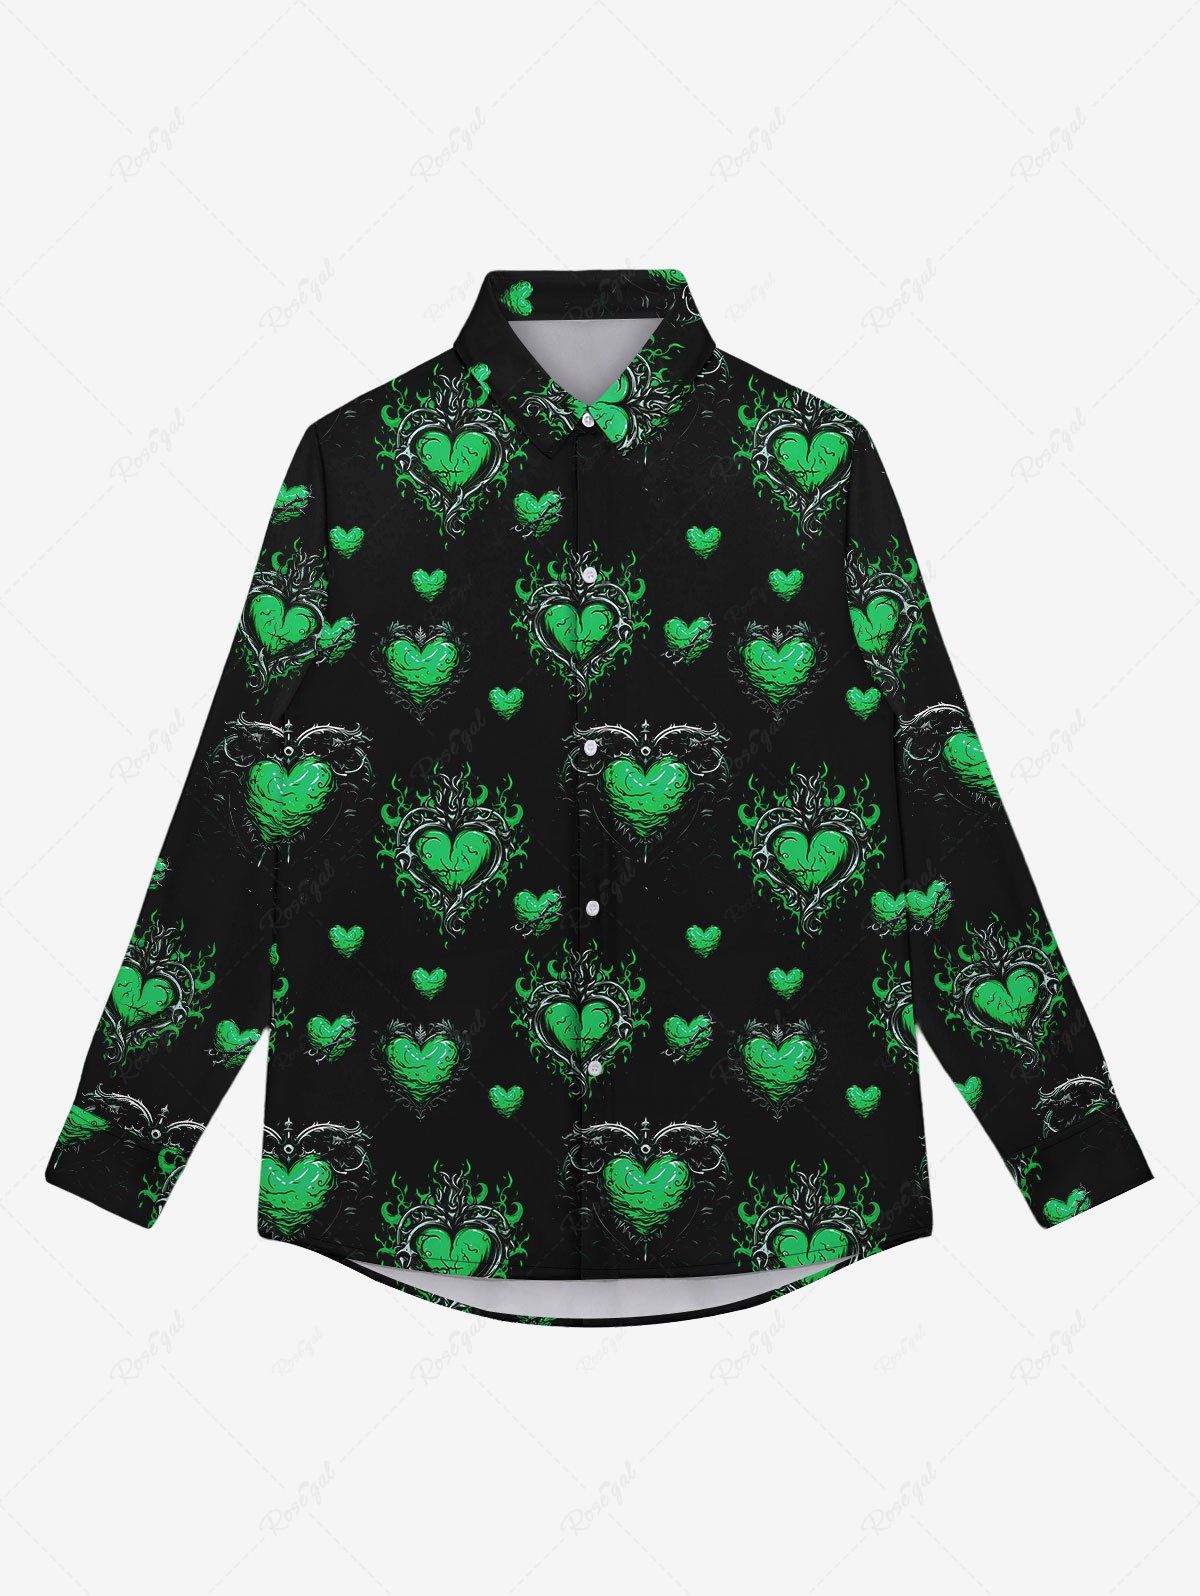 Unique Gothic Heart Leaf Print Button Down Shirt For Men  